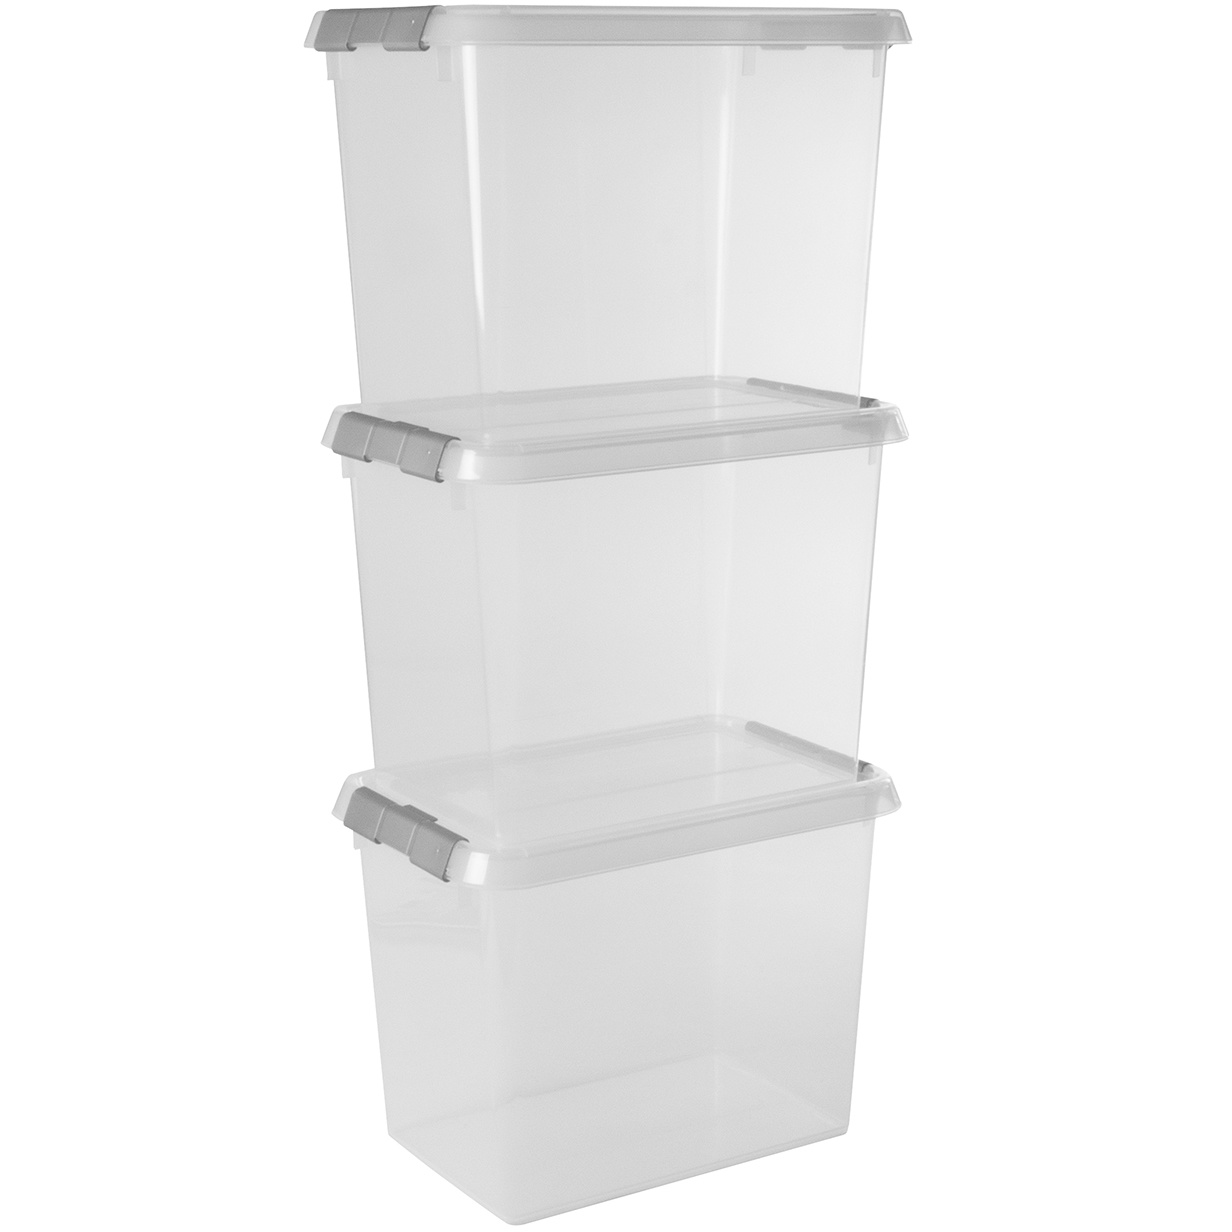 Comfort line Aufbewahrungsbox 3er-Set für 9L transparent metallfarbig